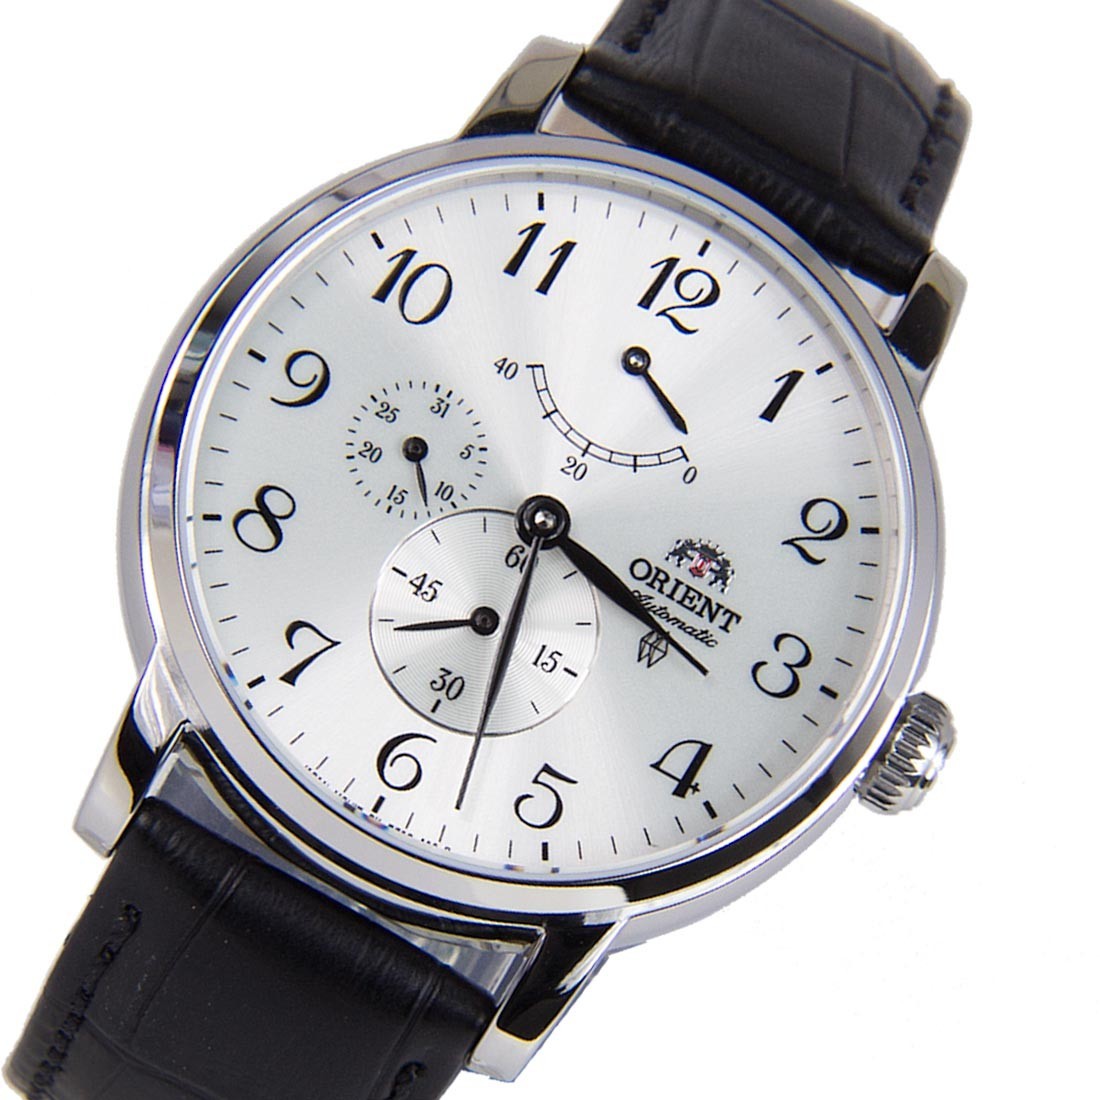 Наручные часы с датой. Orient fez09005w. Orient 9005w. Orient часы хронограф белый циферблат. Orient ez.